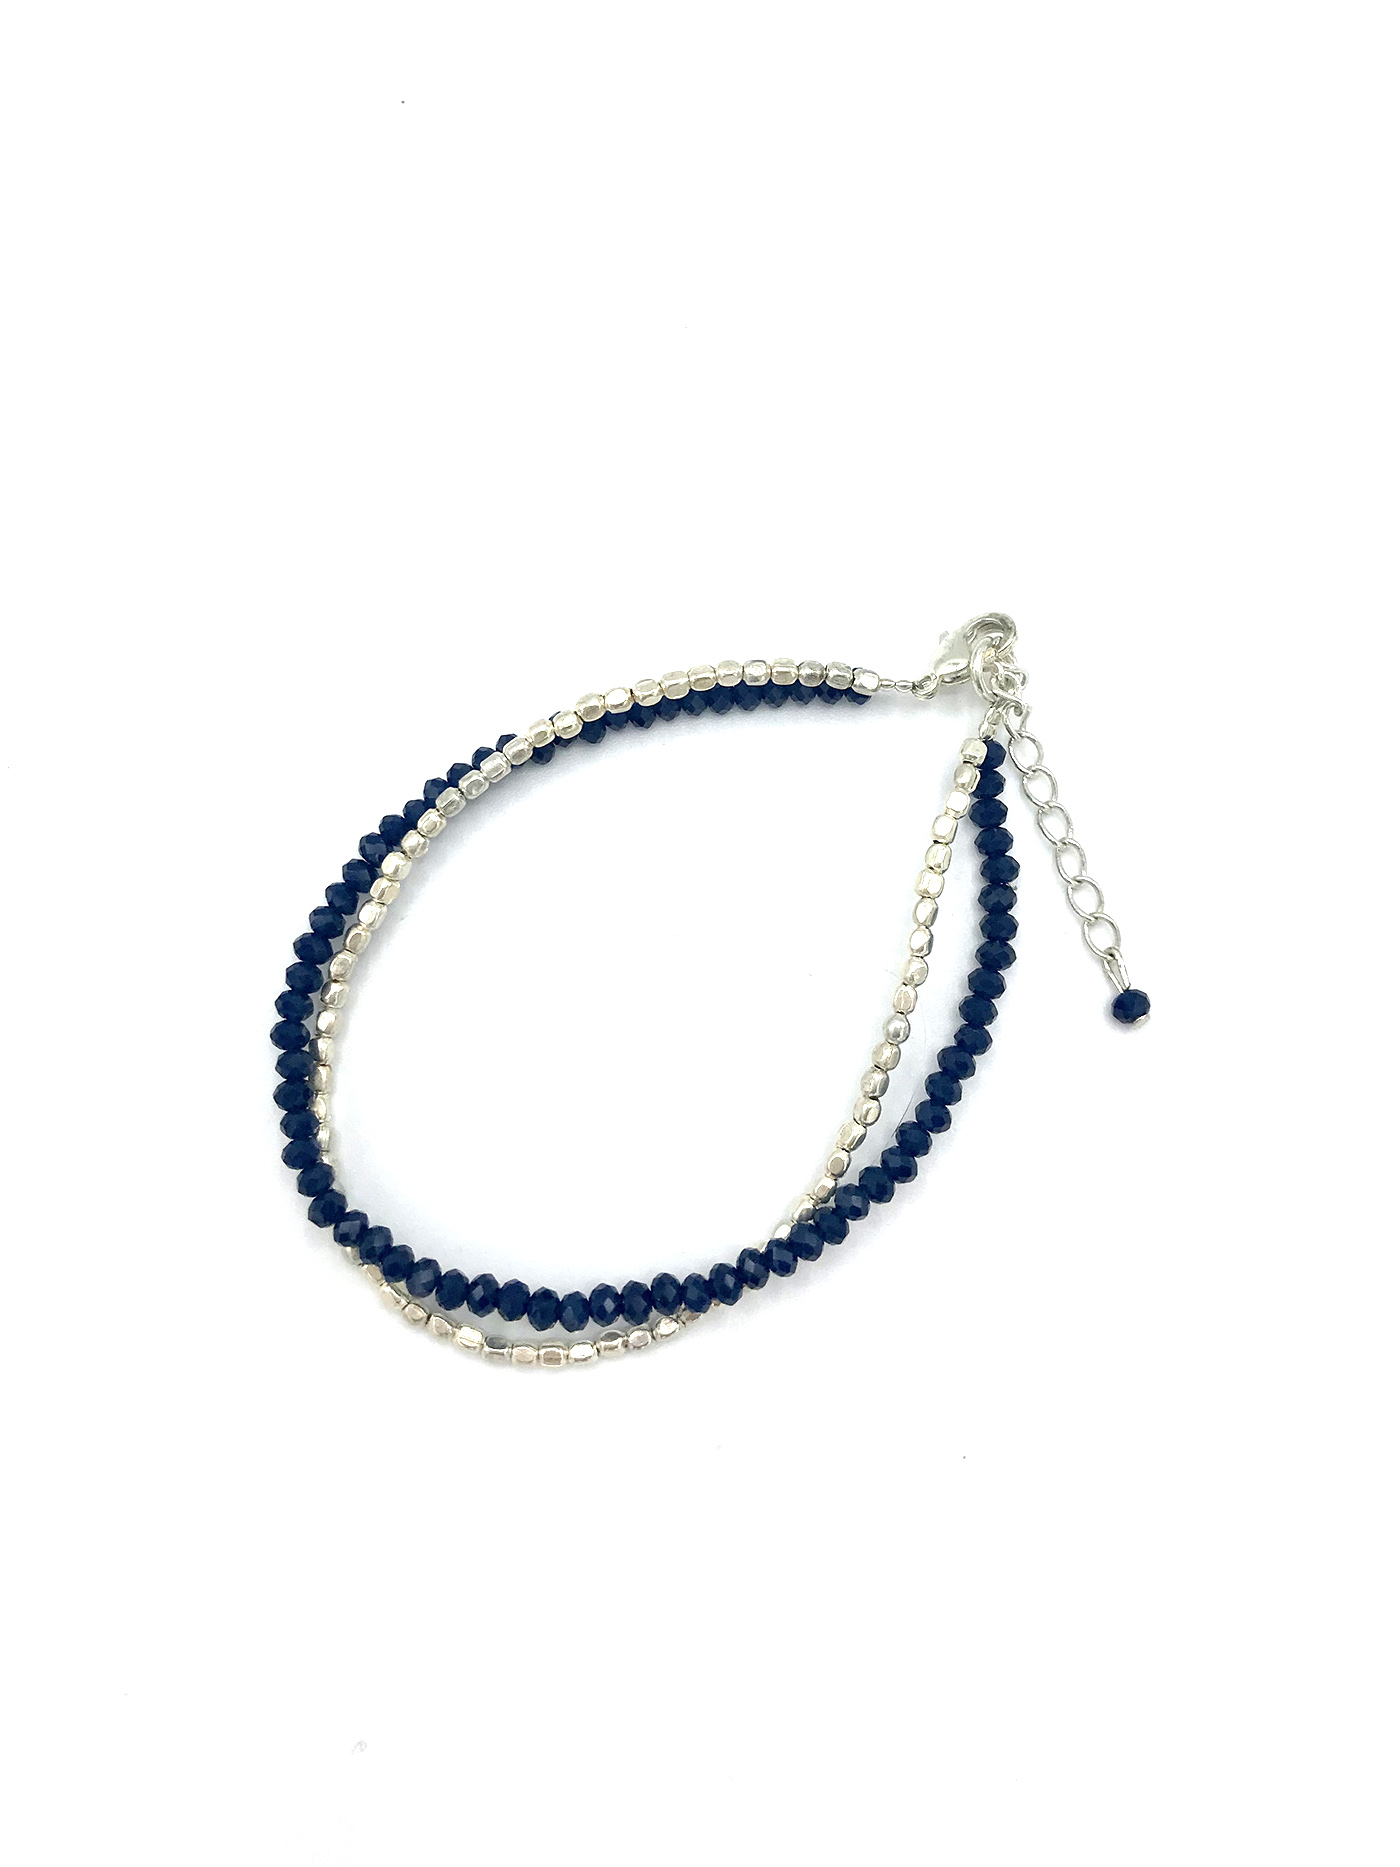 bracelet-clarisse-marine